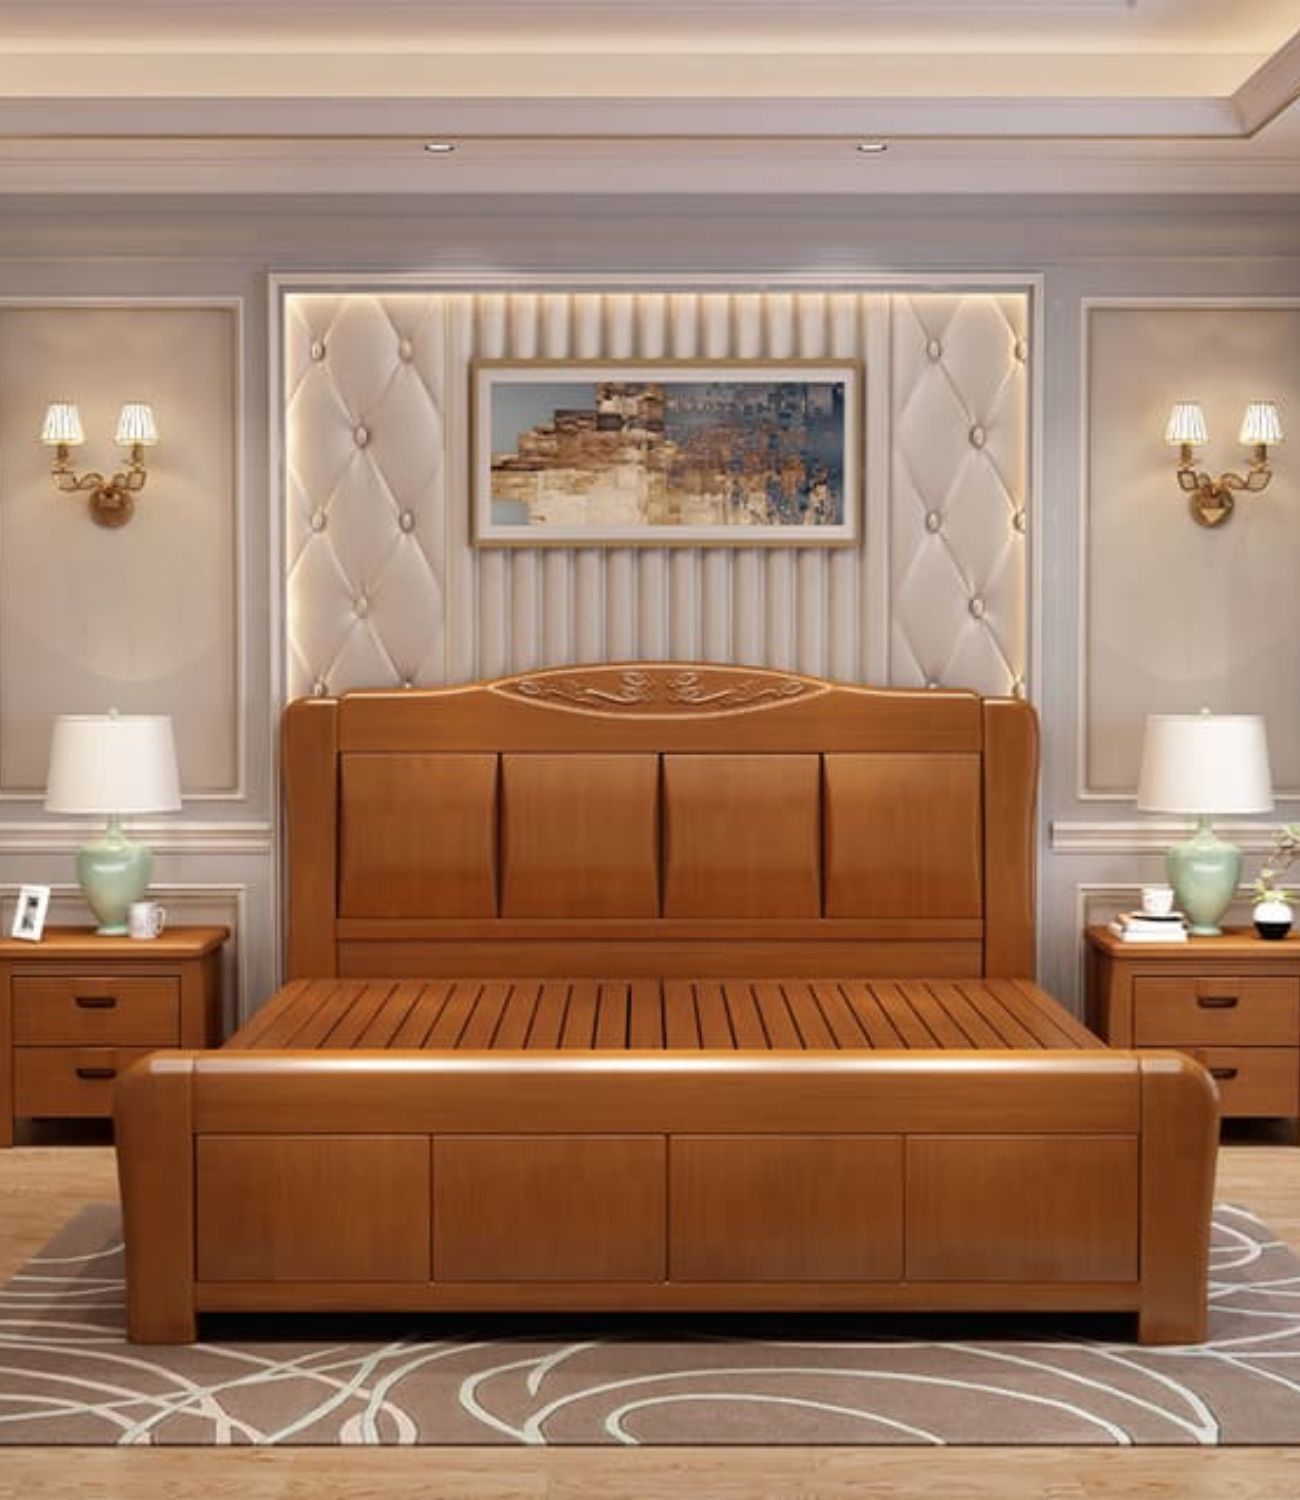 Giá giường gỗ xoan đào sẽ phụ thuộc vào kích thước của giường